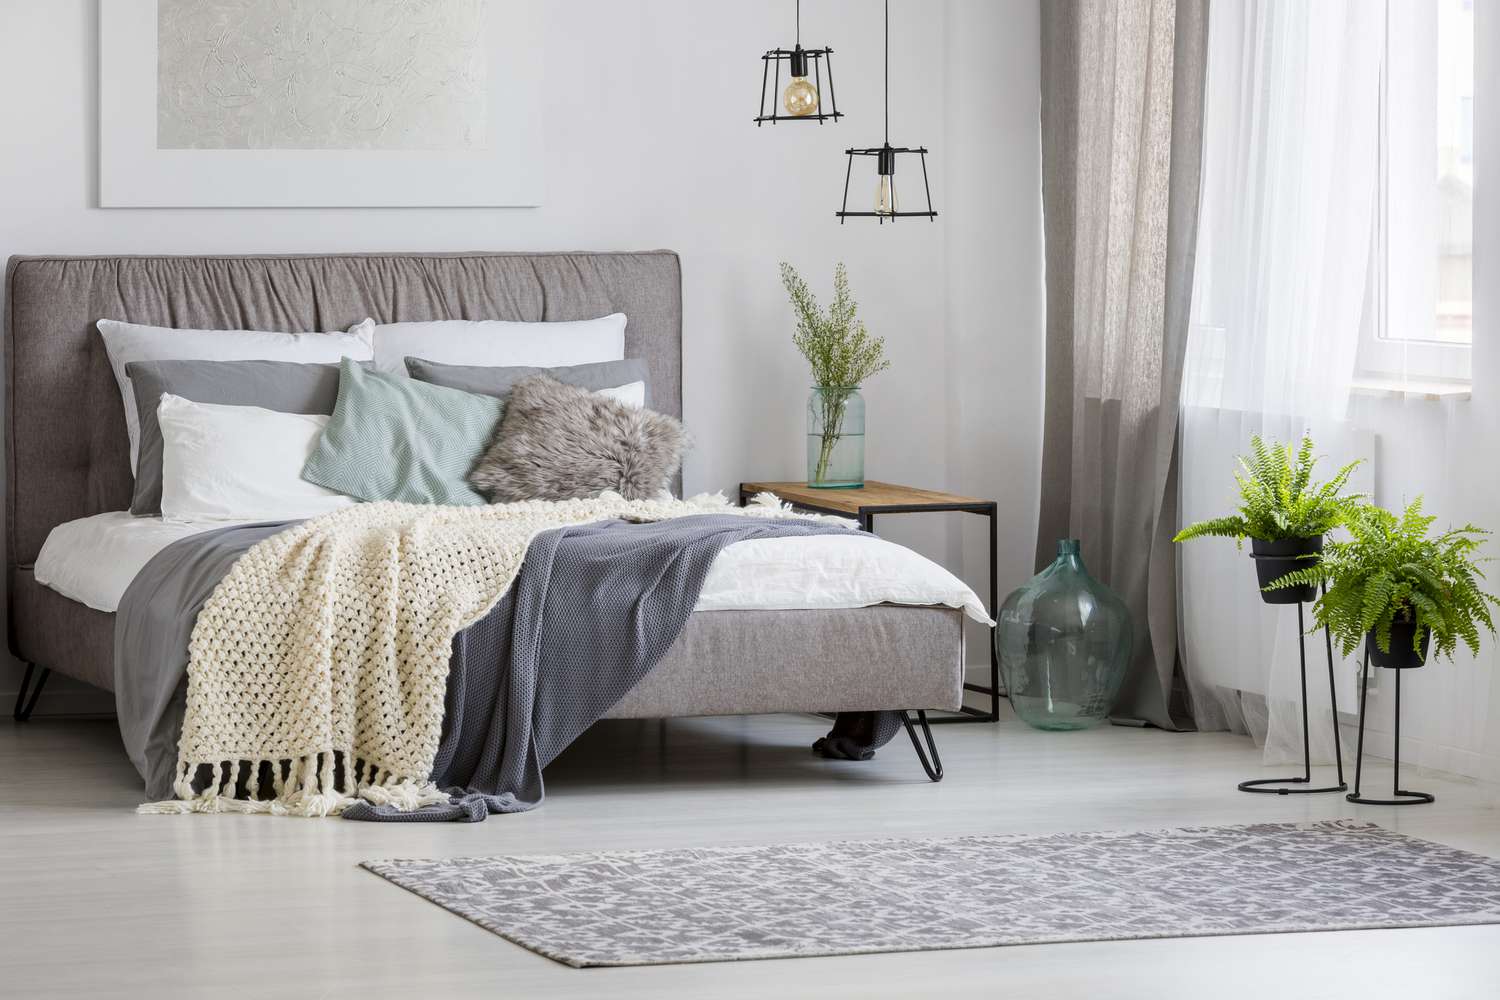 Graue, moderne Schlafzimmereinrichtung mit Kingsize-Bett, dekoriert mit Kissen und Decken